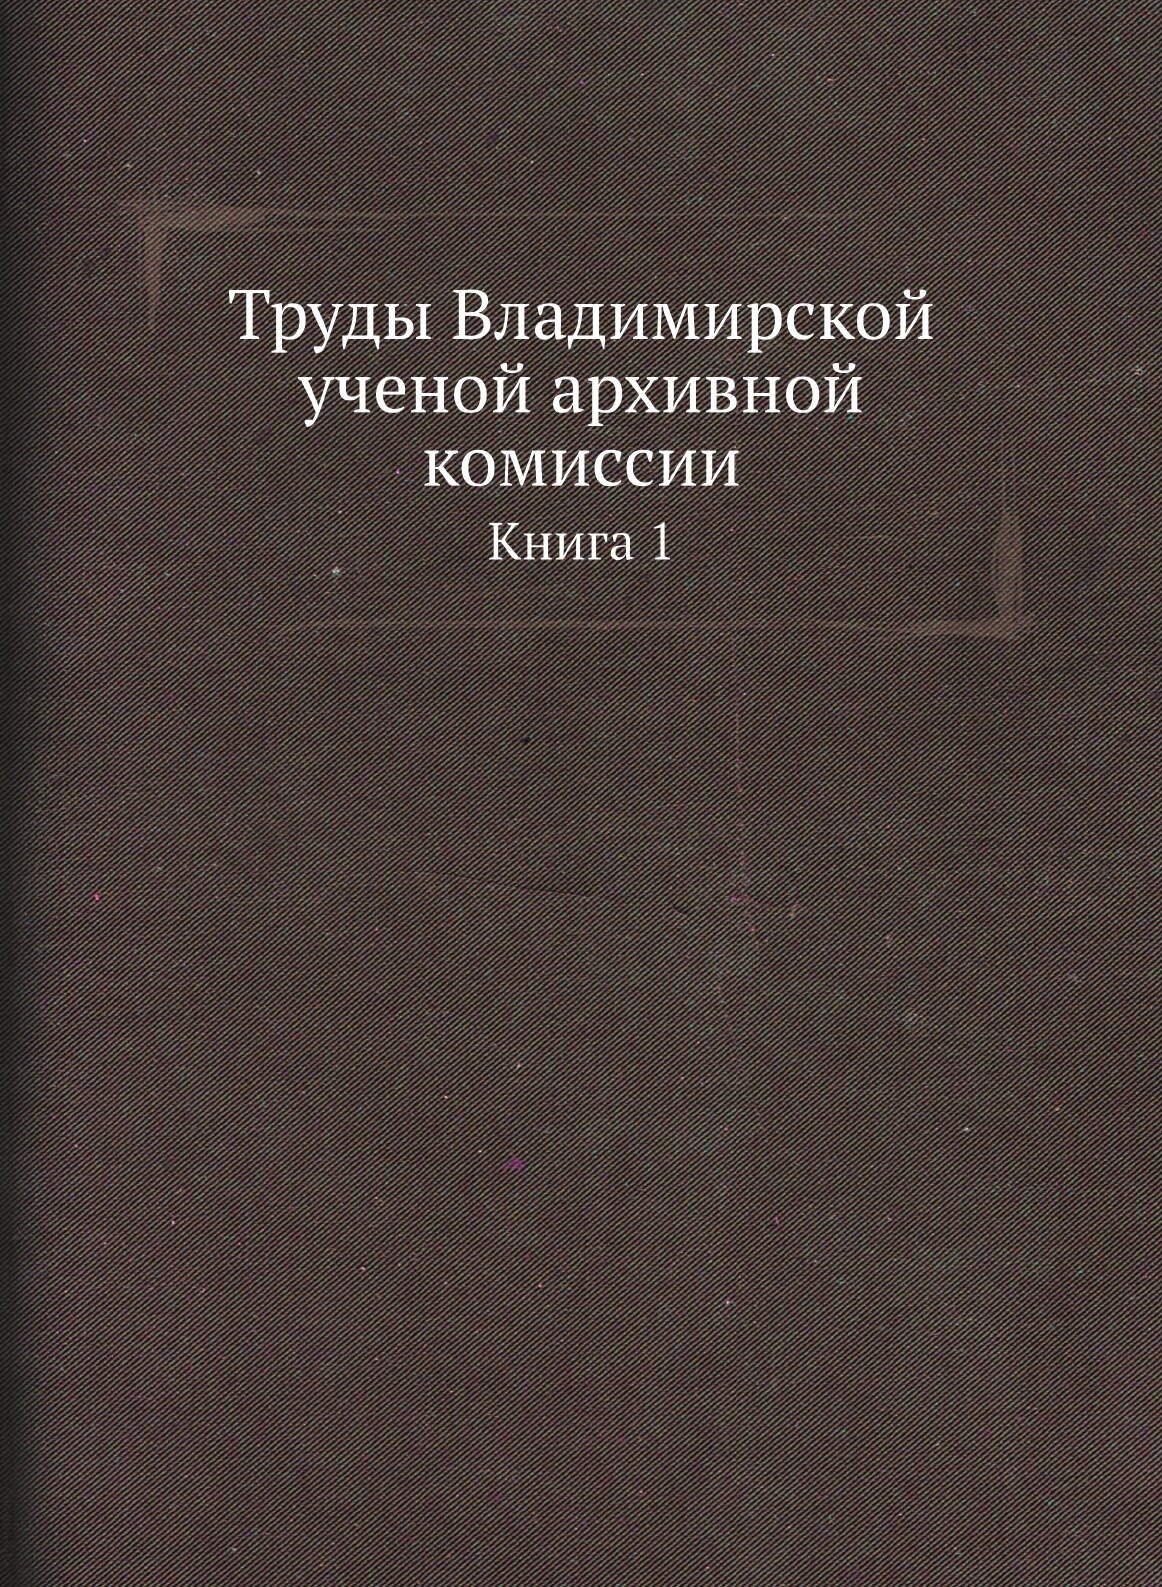 Труды Владимирской ученой архивной комиссии. Книга 1